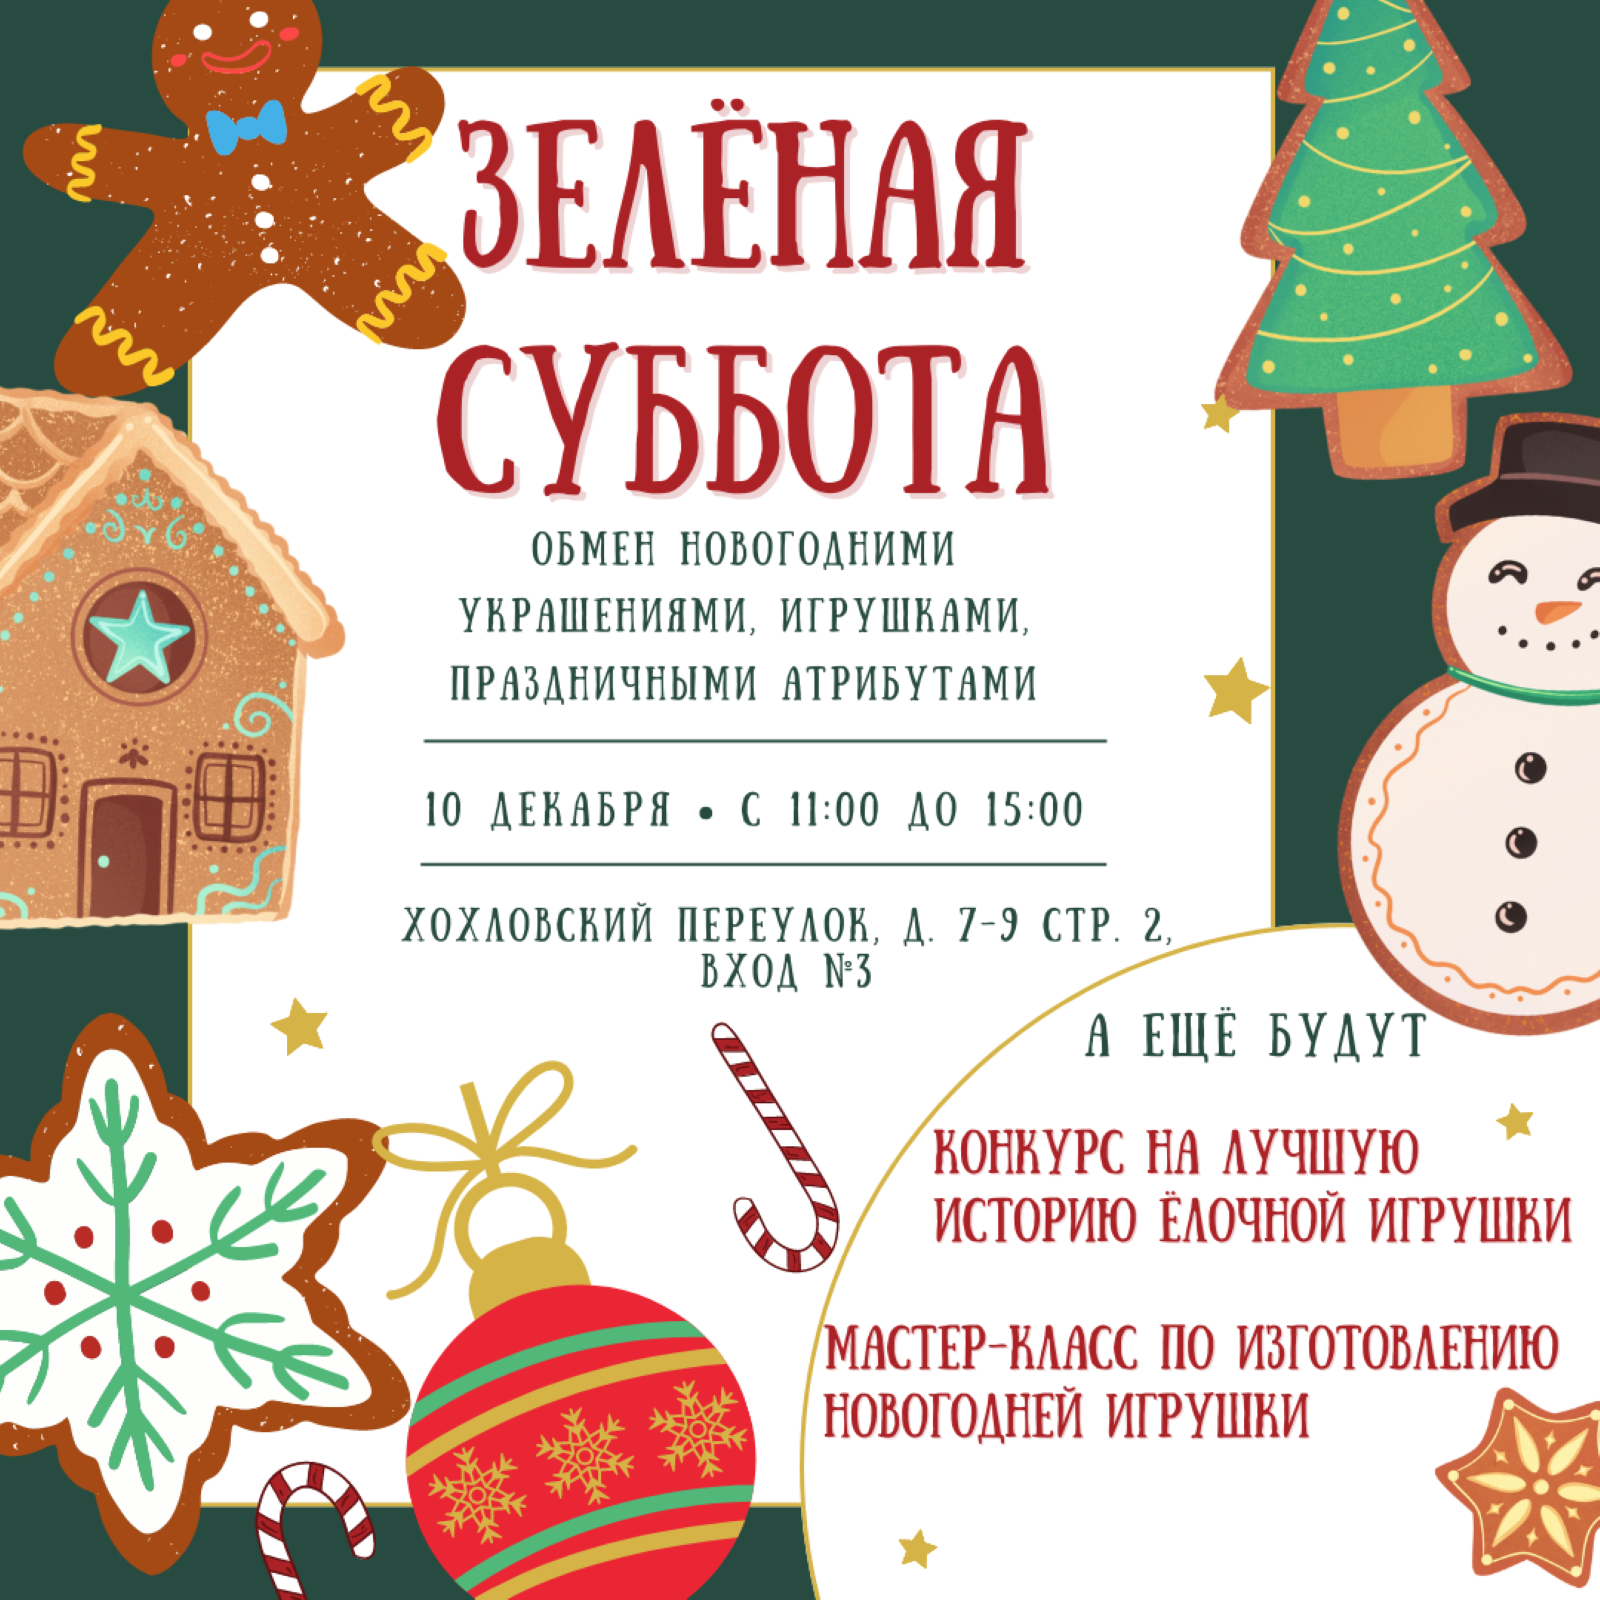 Подари праздник: 10 декабря москвичи обменяются новогодними игрушками на «Зелёной субботе» - фото 1